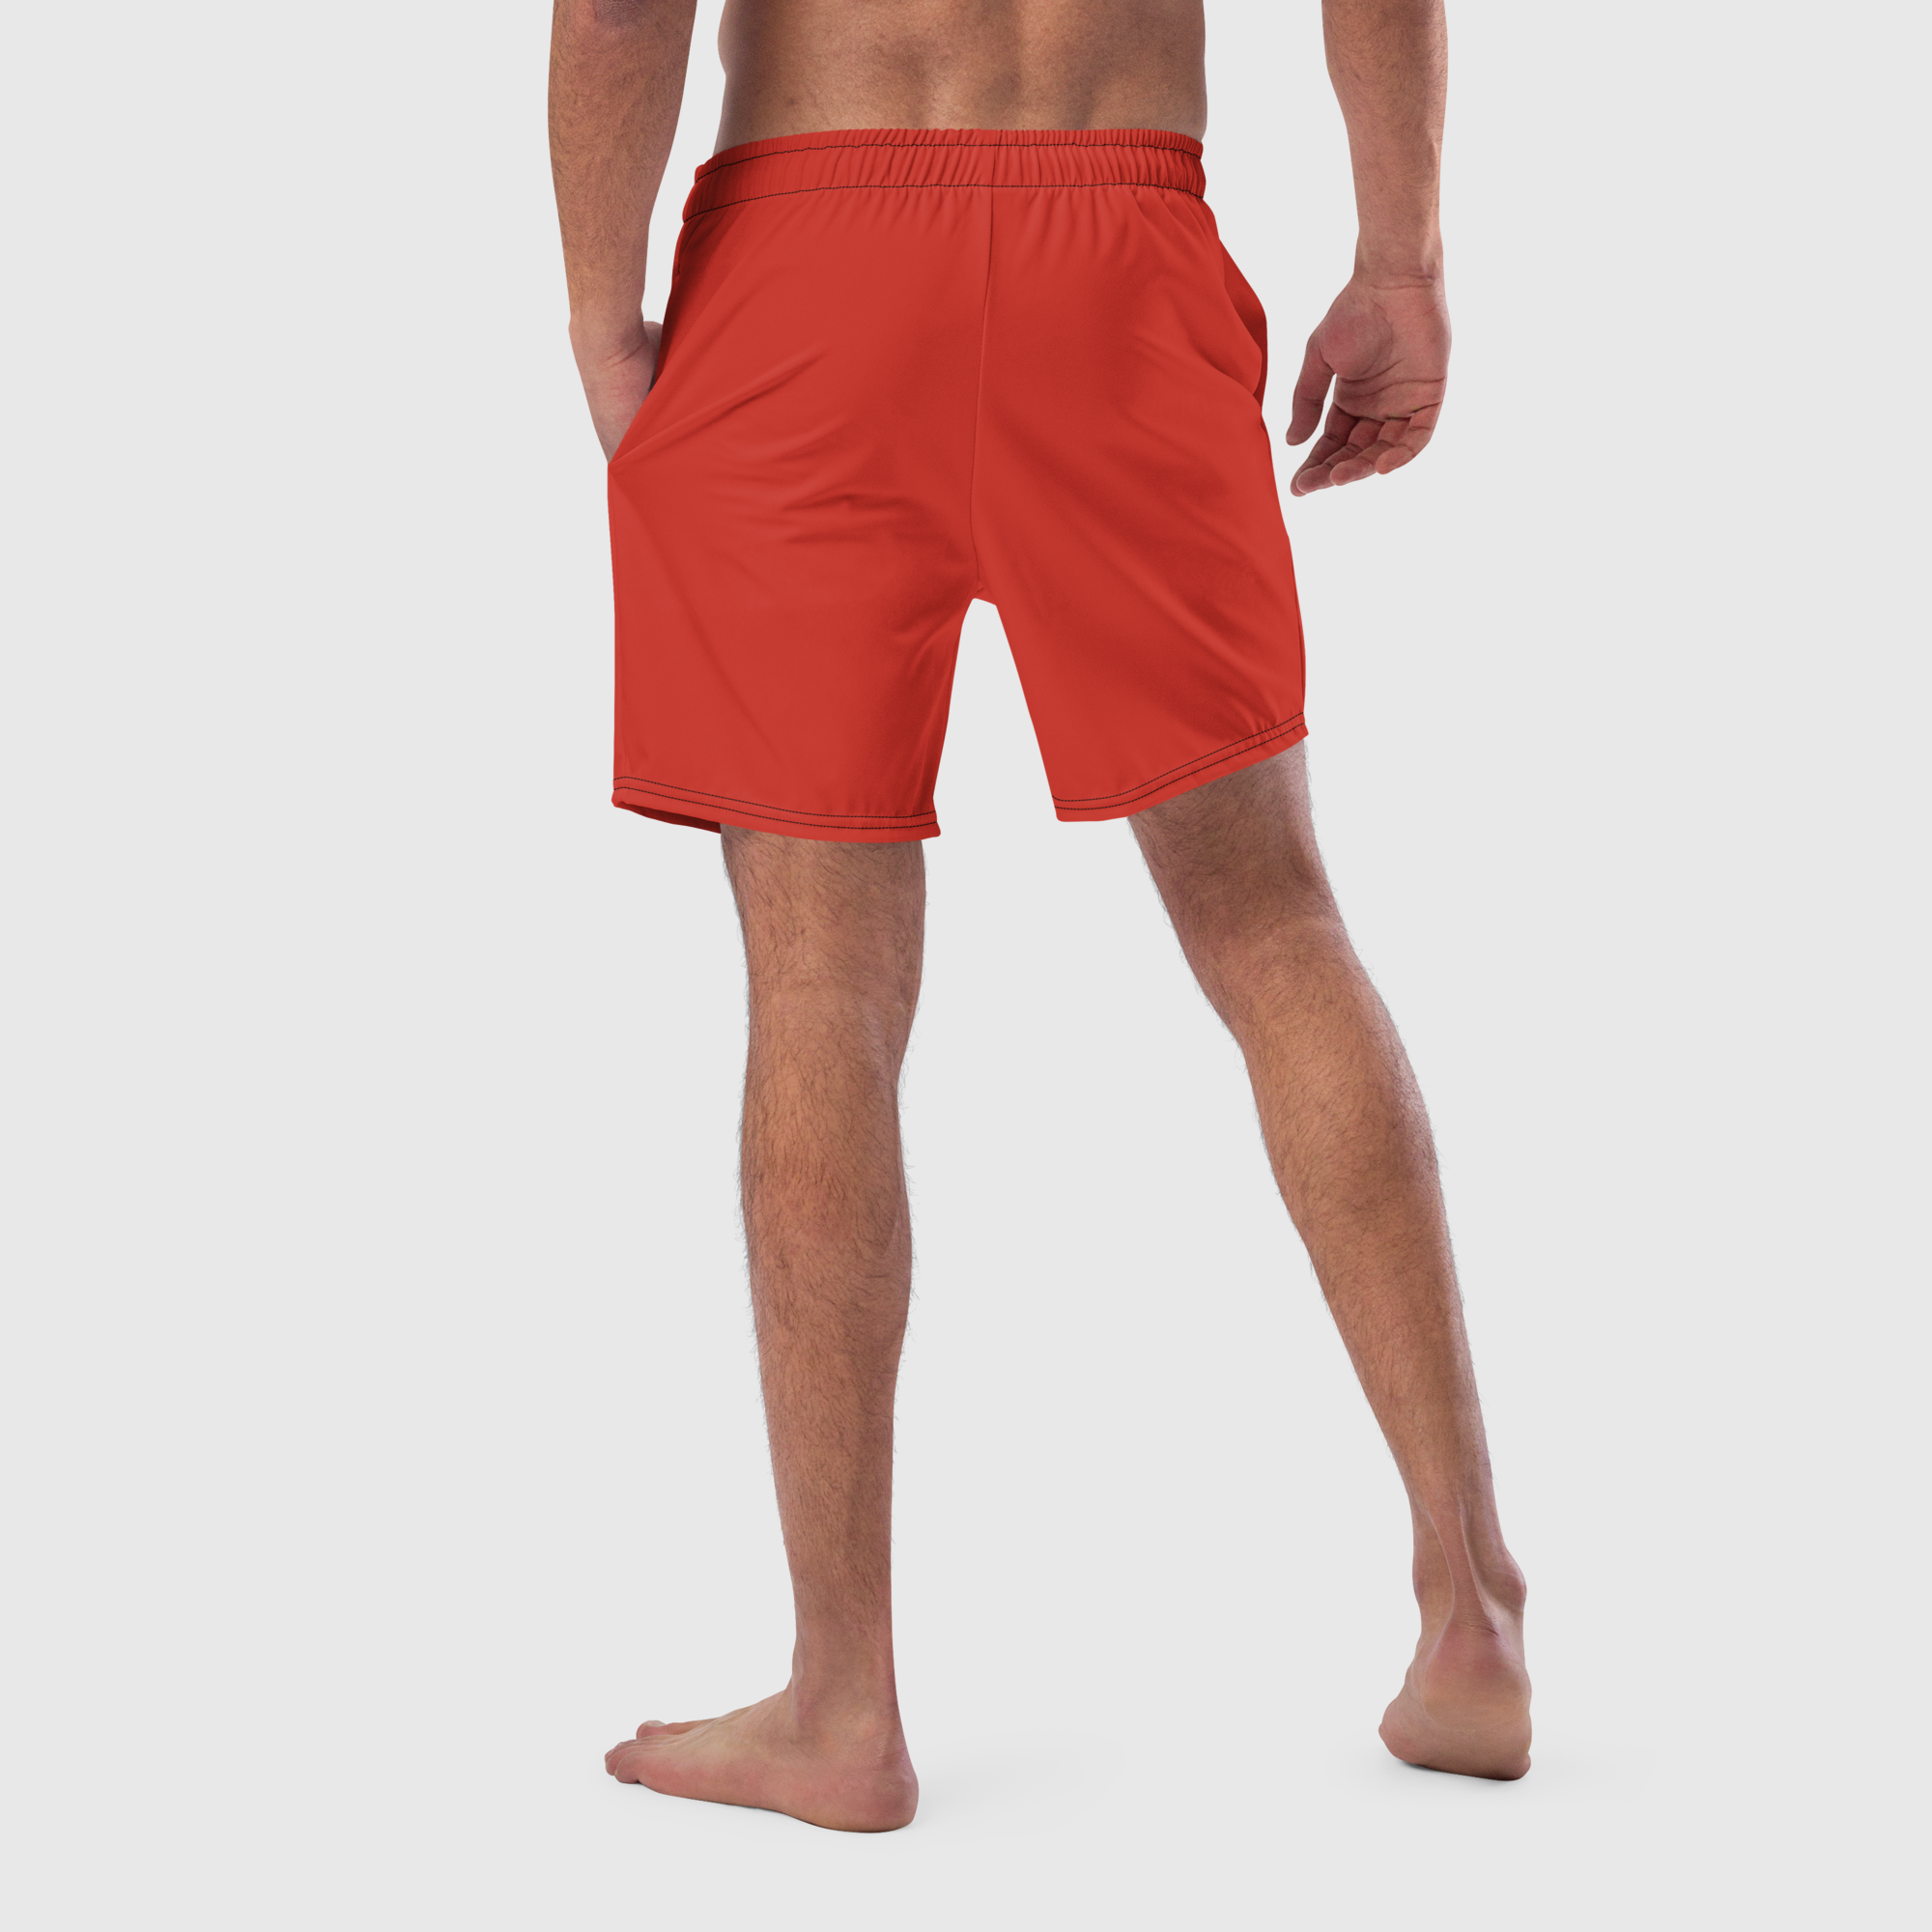 Men's swim trunks - Red